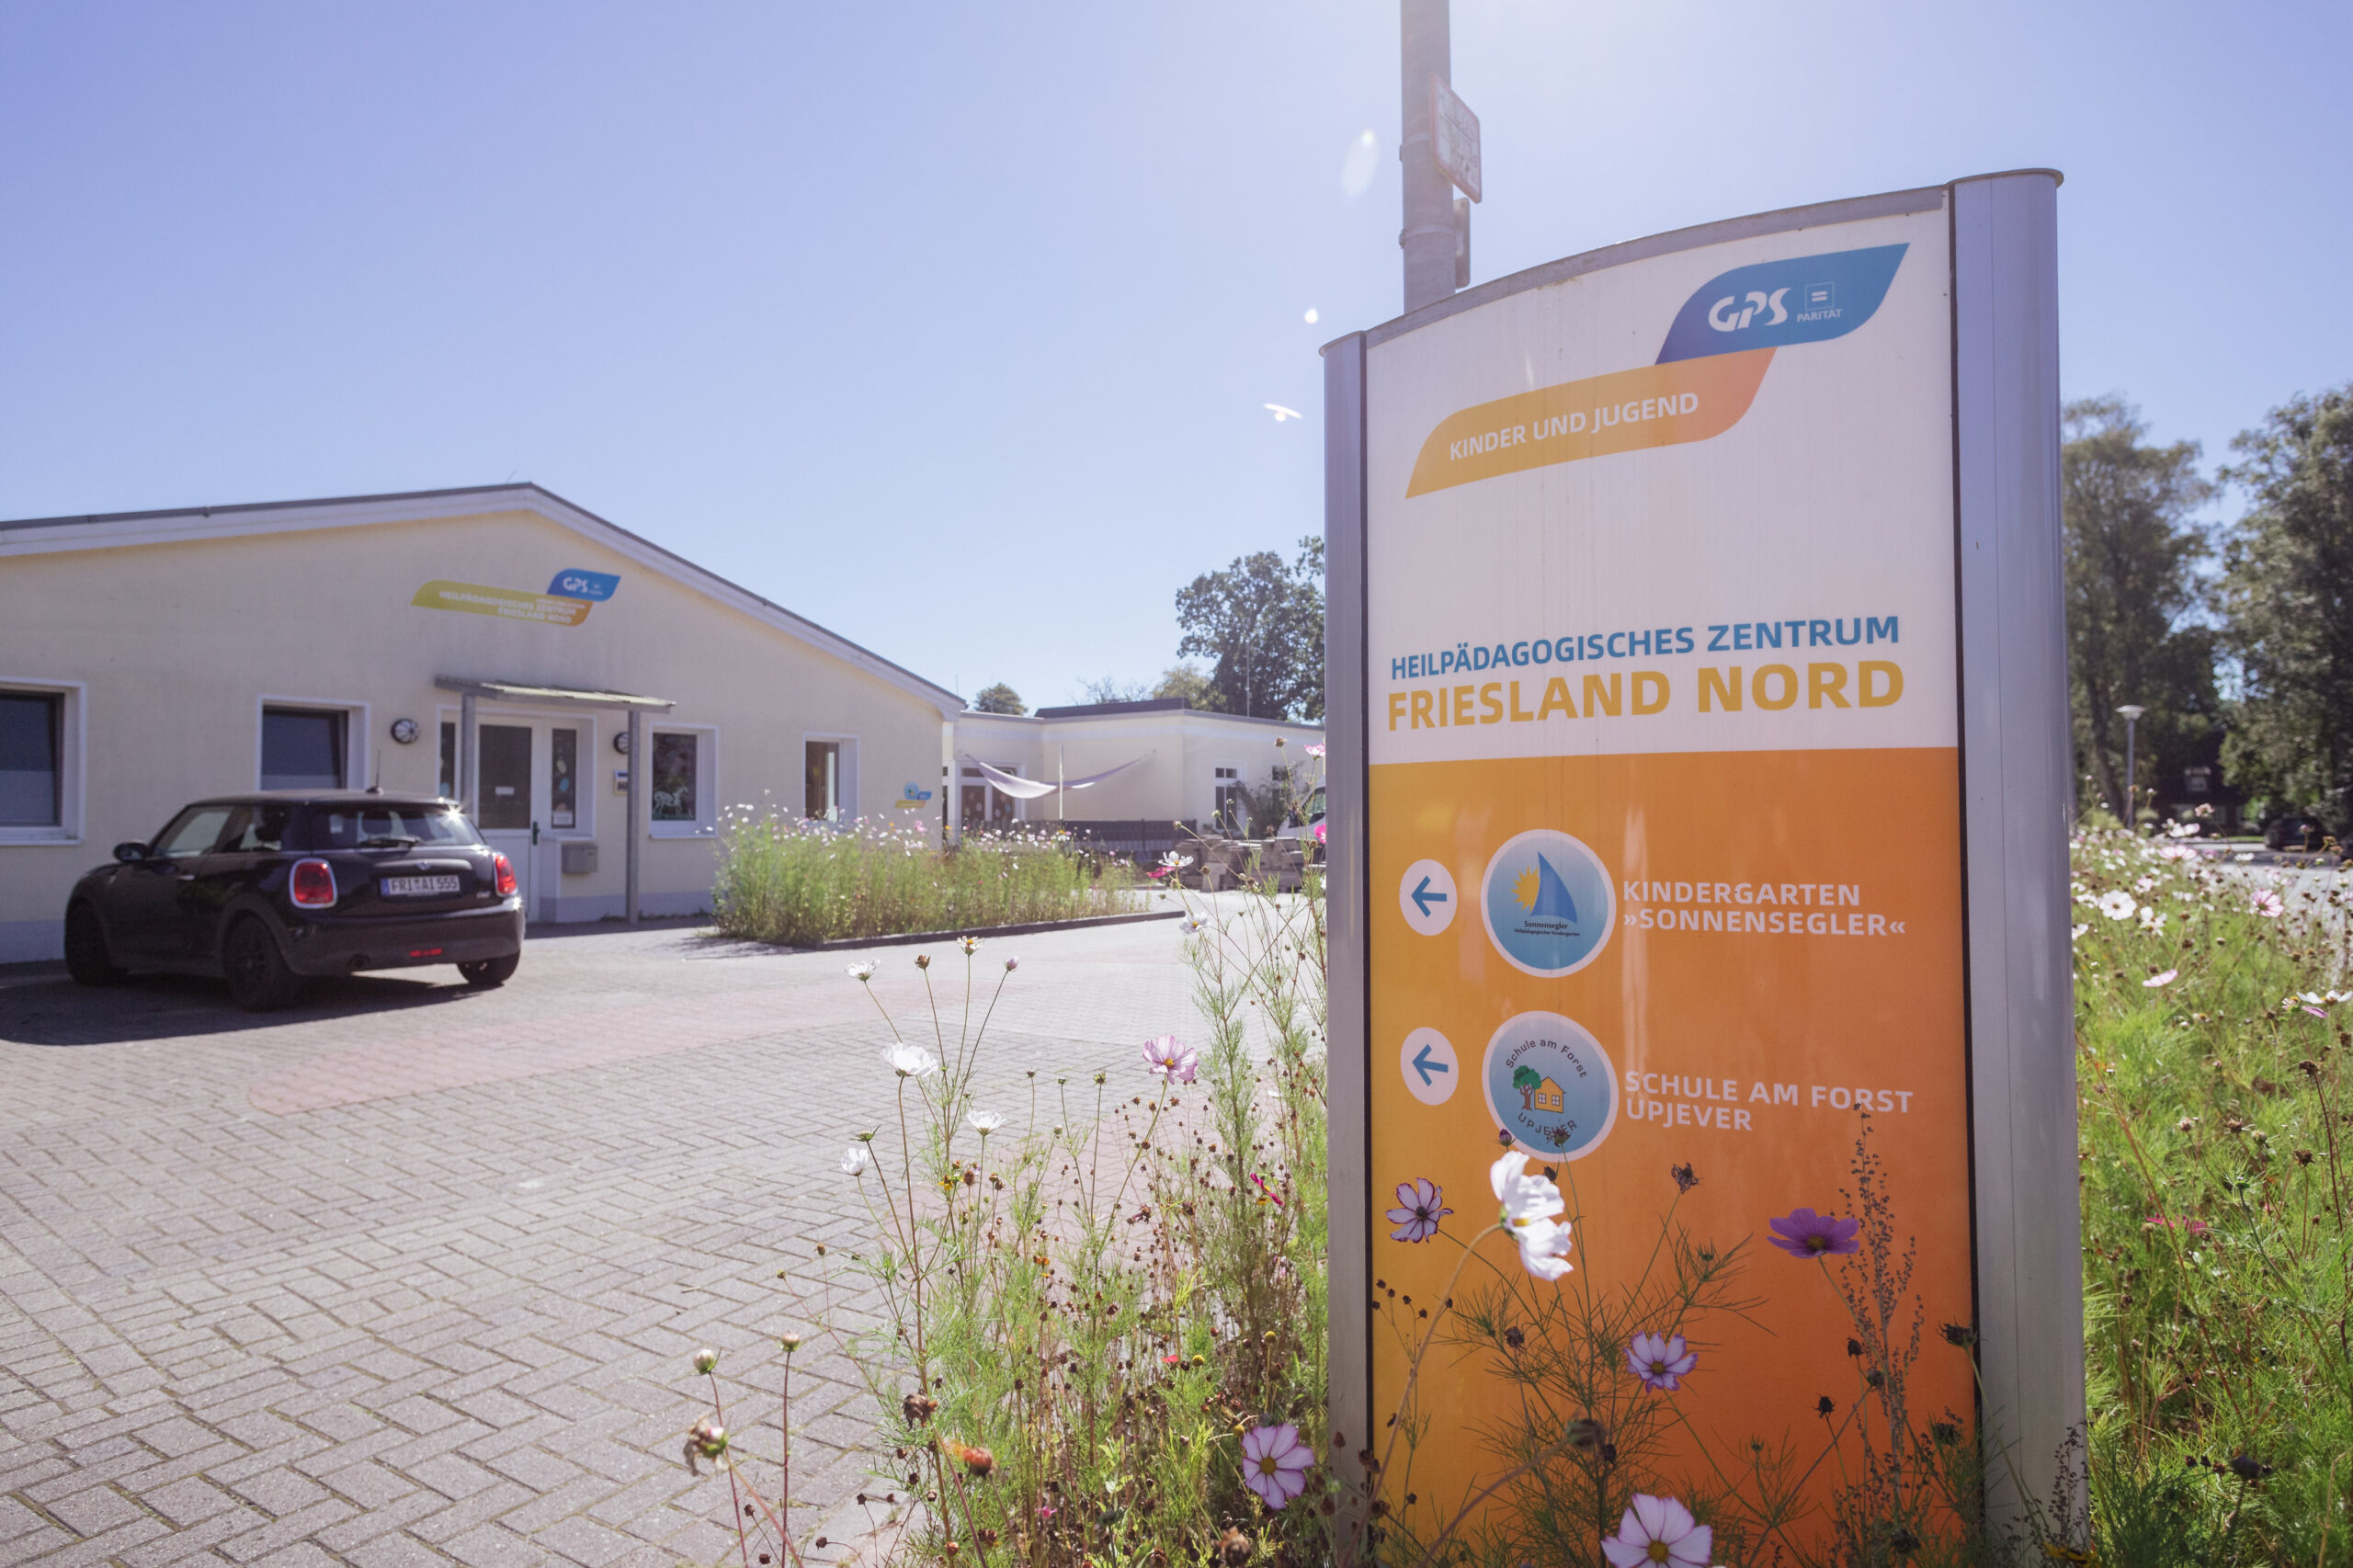 Draußen bei sonnigen Wetter sieht man die Einrichtung des Heilpädogischen Zentrums Friesland Nord. An der Straße ist eine Infotafel zum "Kindergarten Sonnensegler" und die "Schule am Forst Upjever".